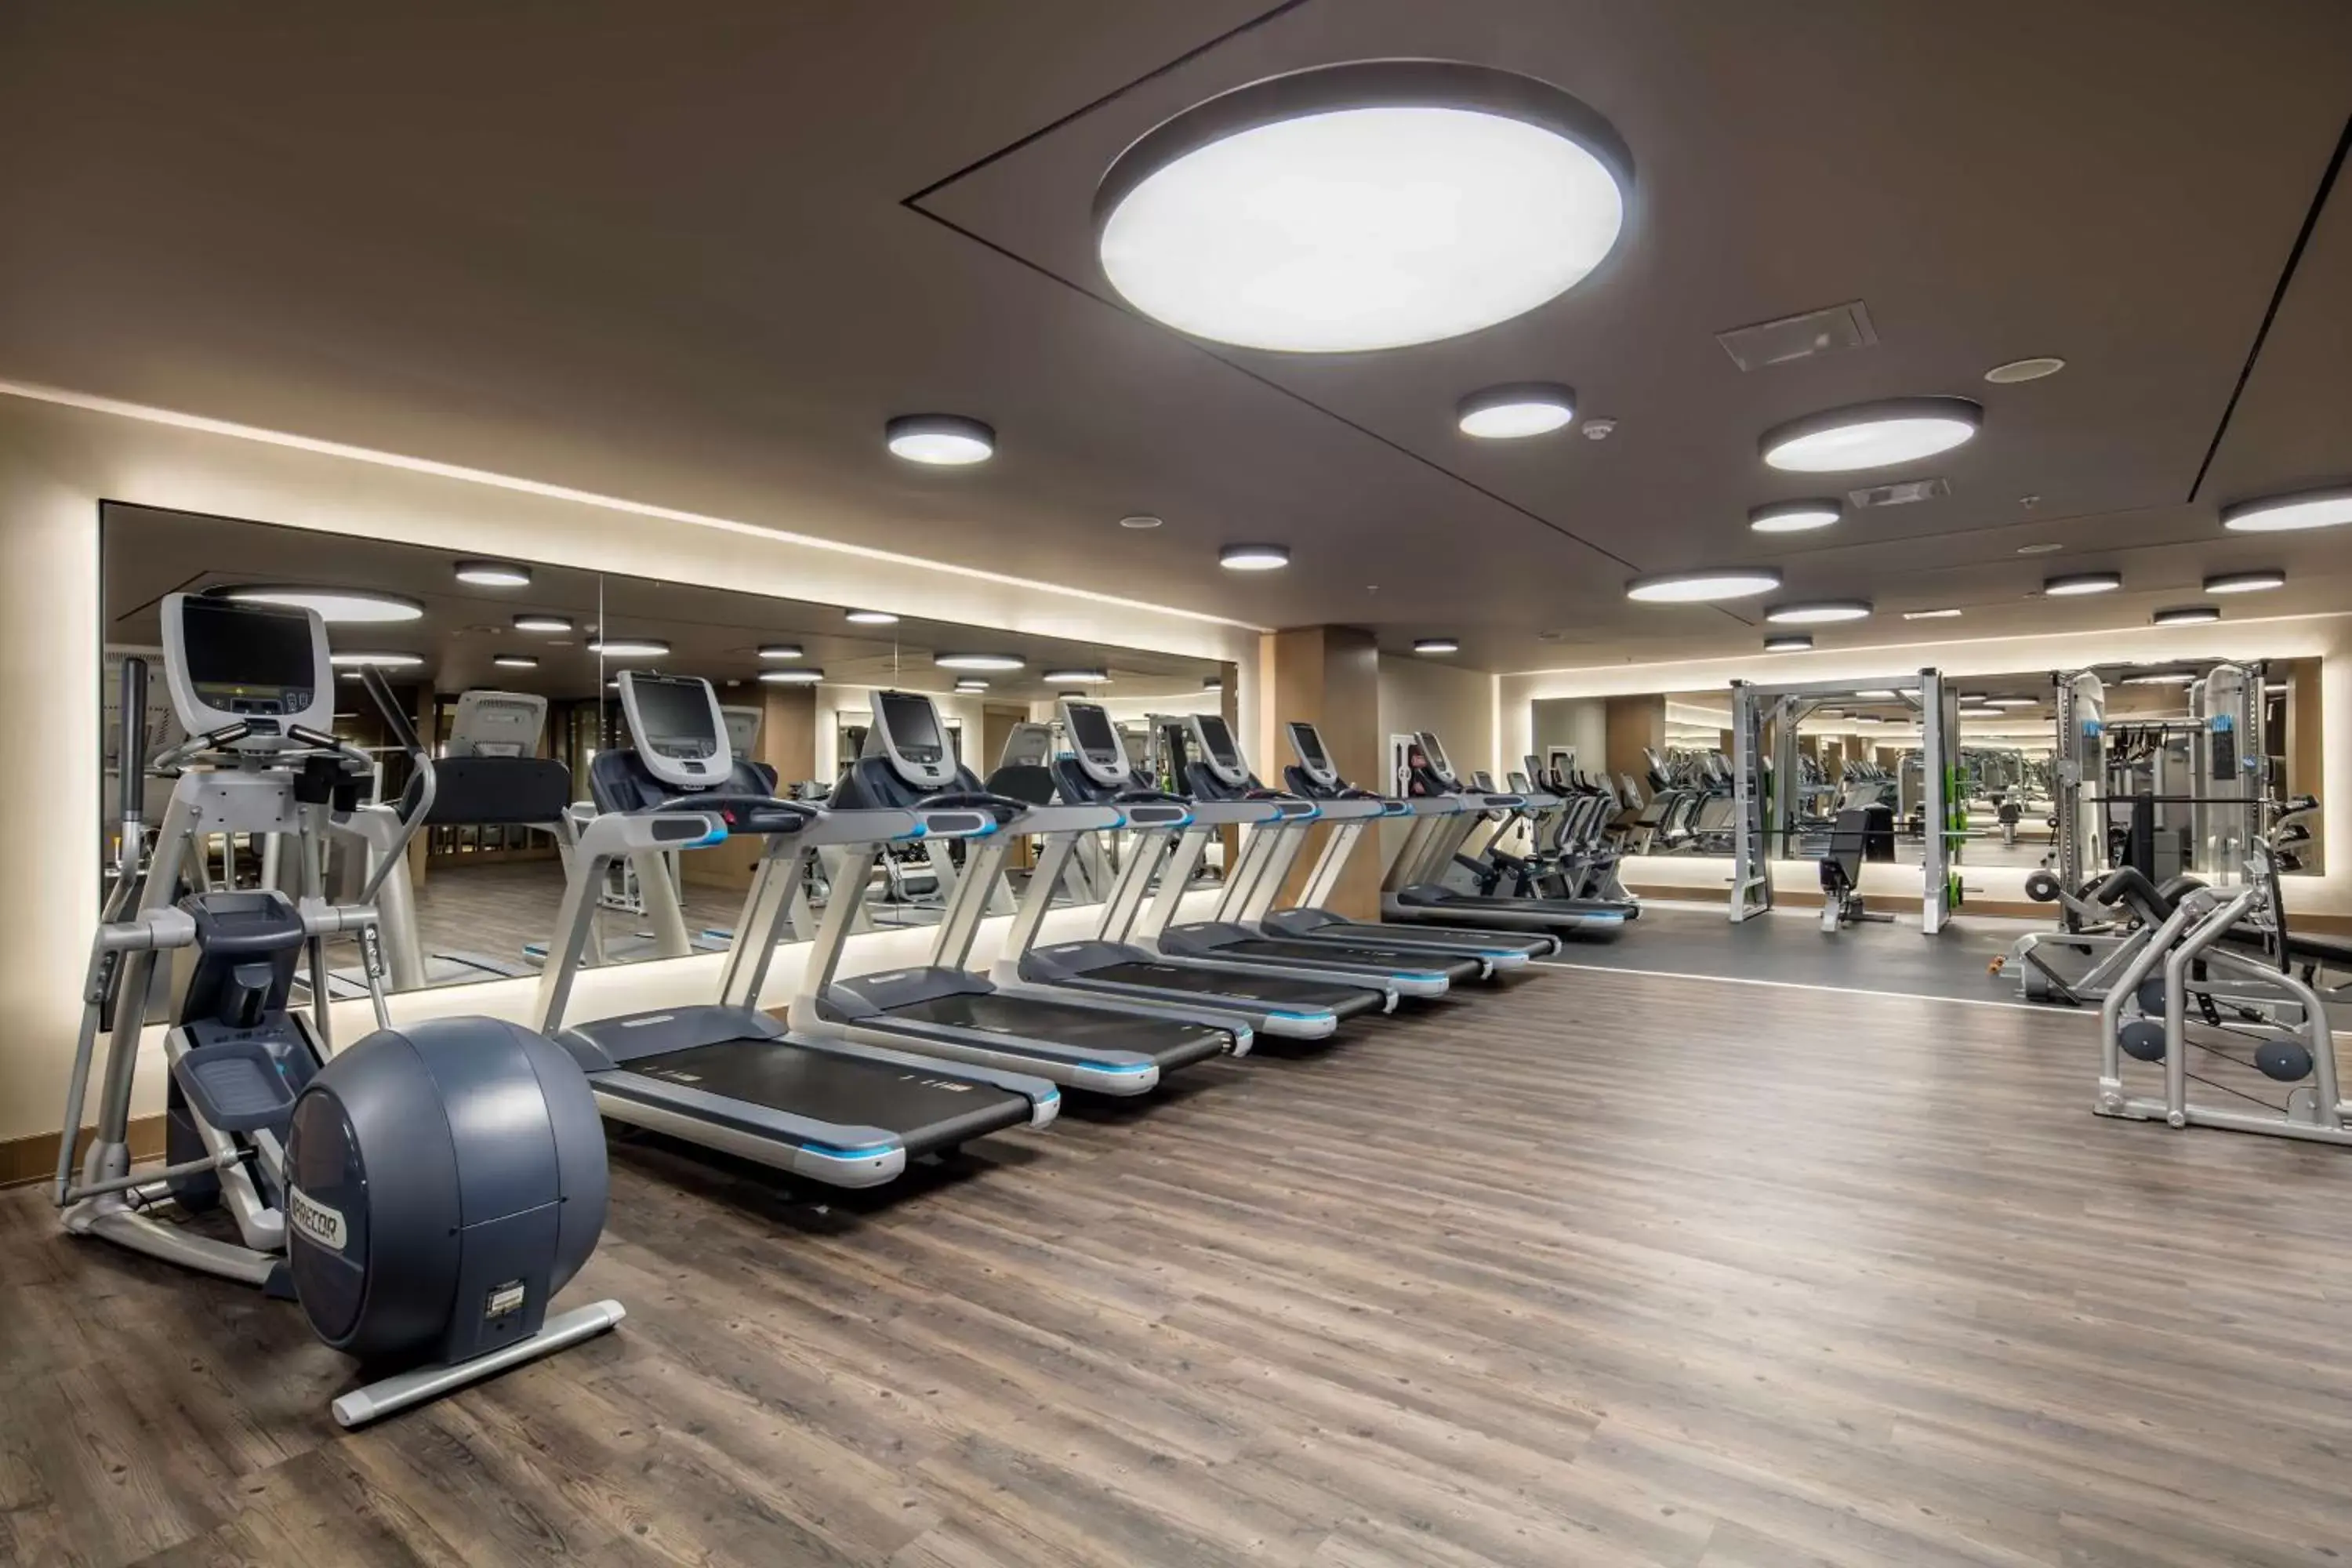 Fitness centre/facilities, Fitness Center/Facilities in Mersin HiltonSA